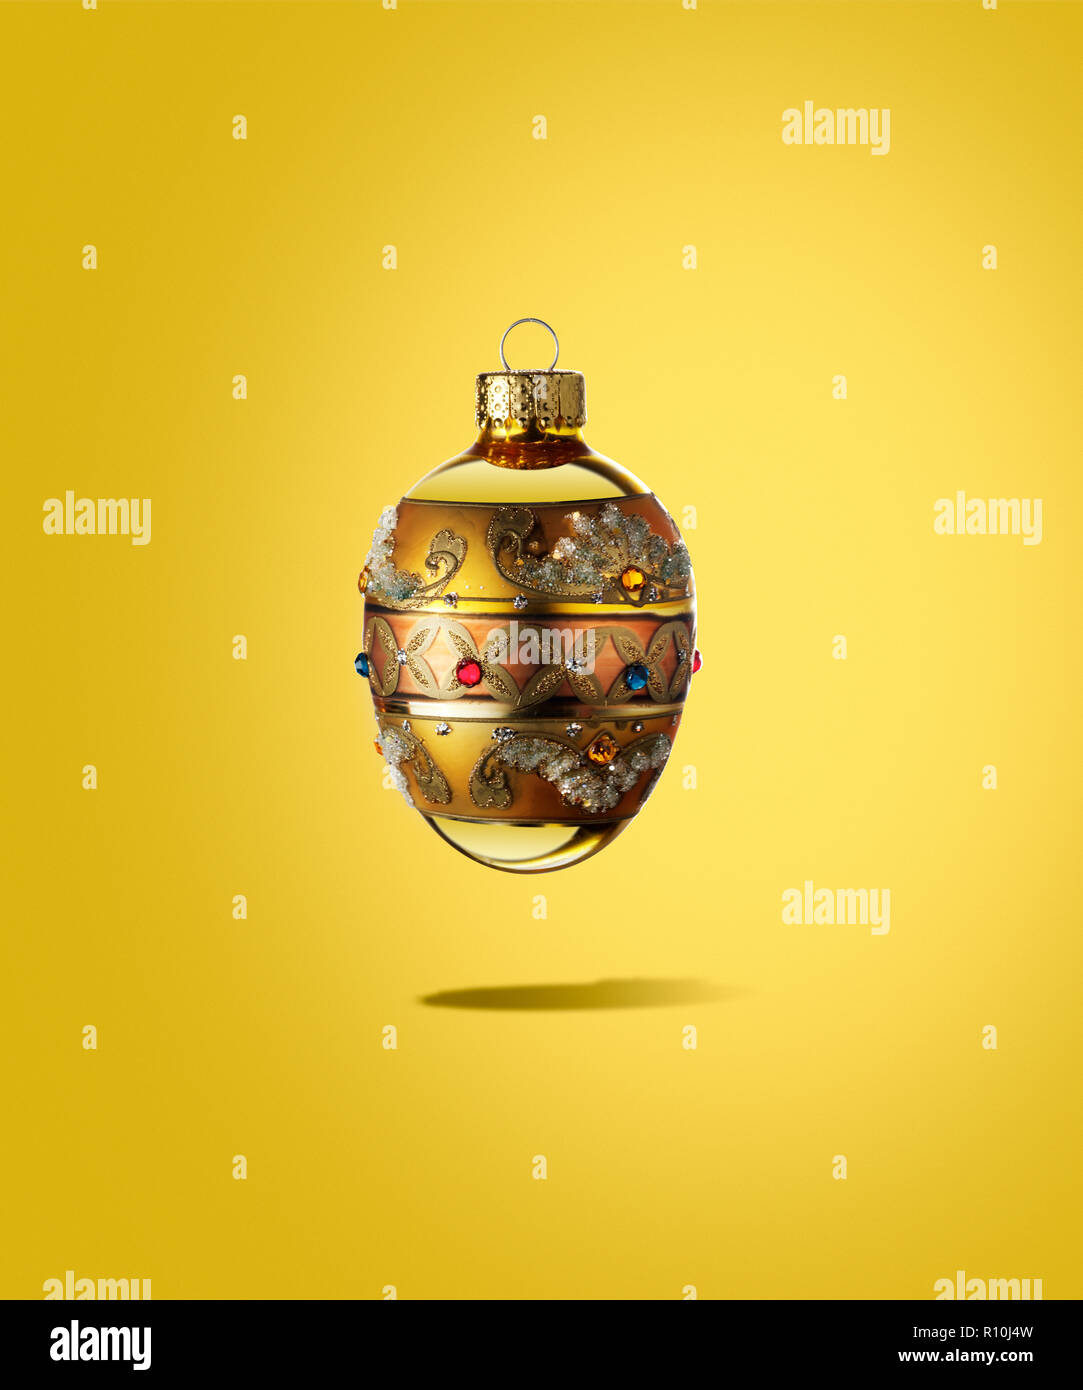 Cerca de adornos de Navidad regal flotando con sombra, fondo amarillo Foto de stock